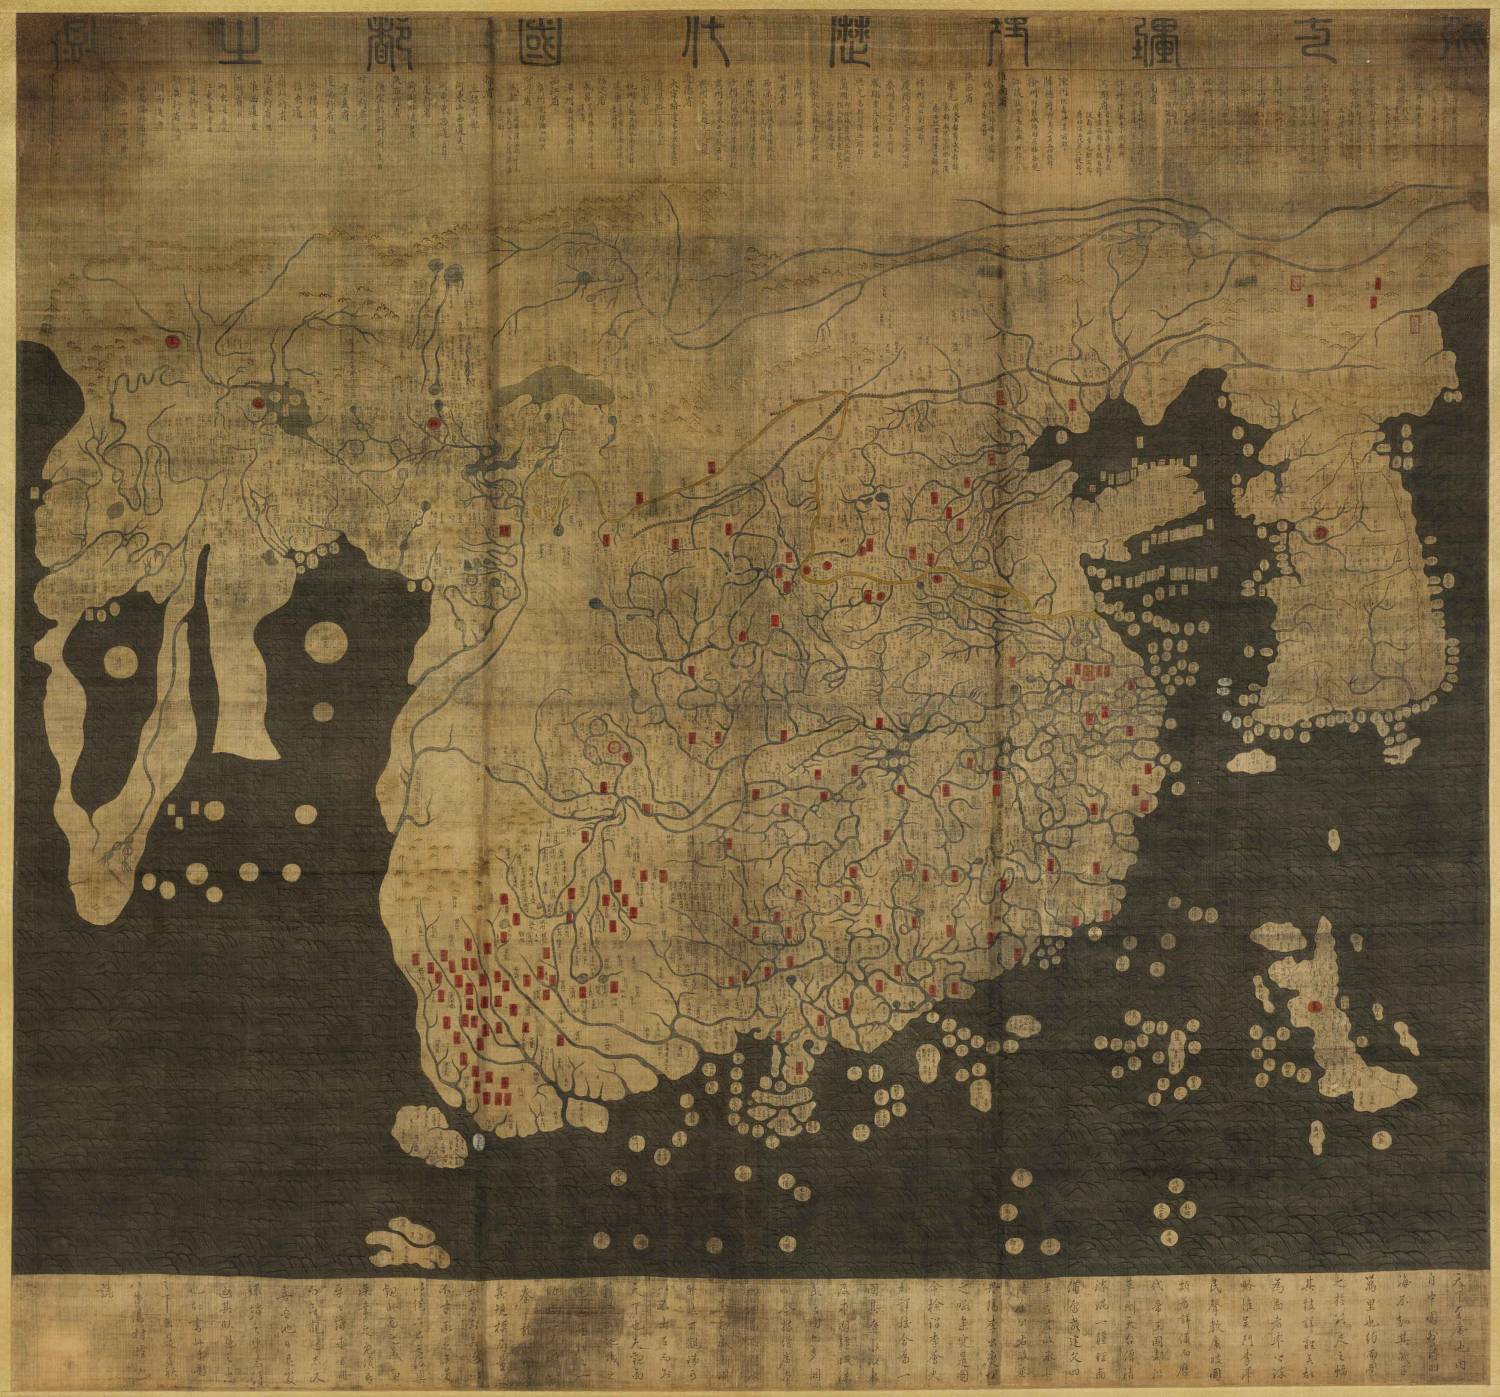 【TIF高清图】混一疆理历代国都之图-1470年代以前-龙谷大学图书馆藏1